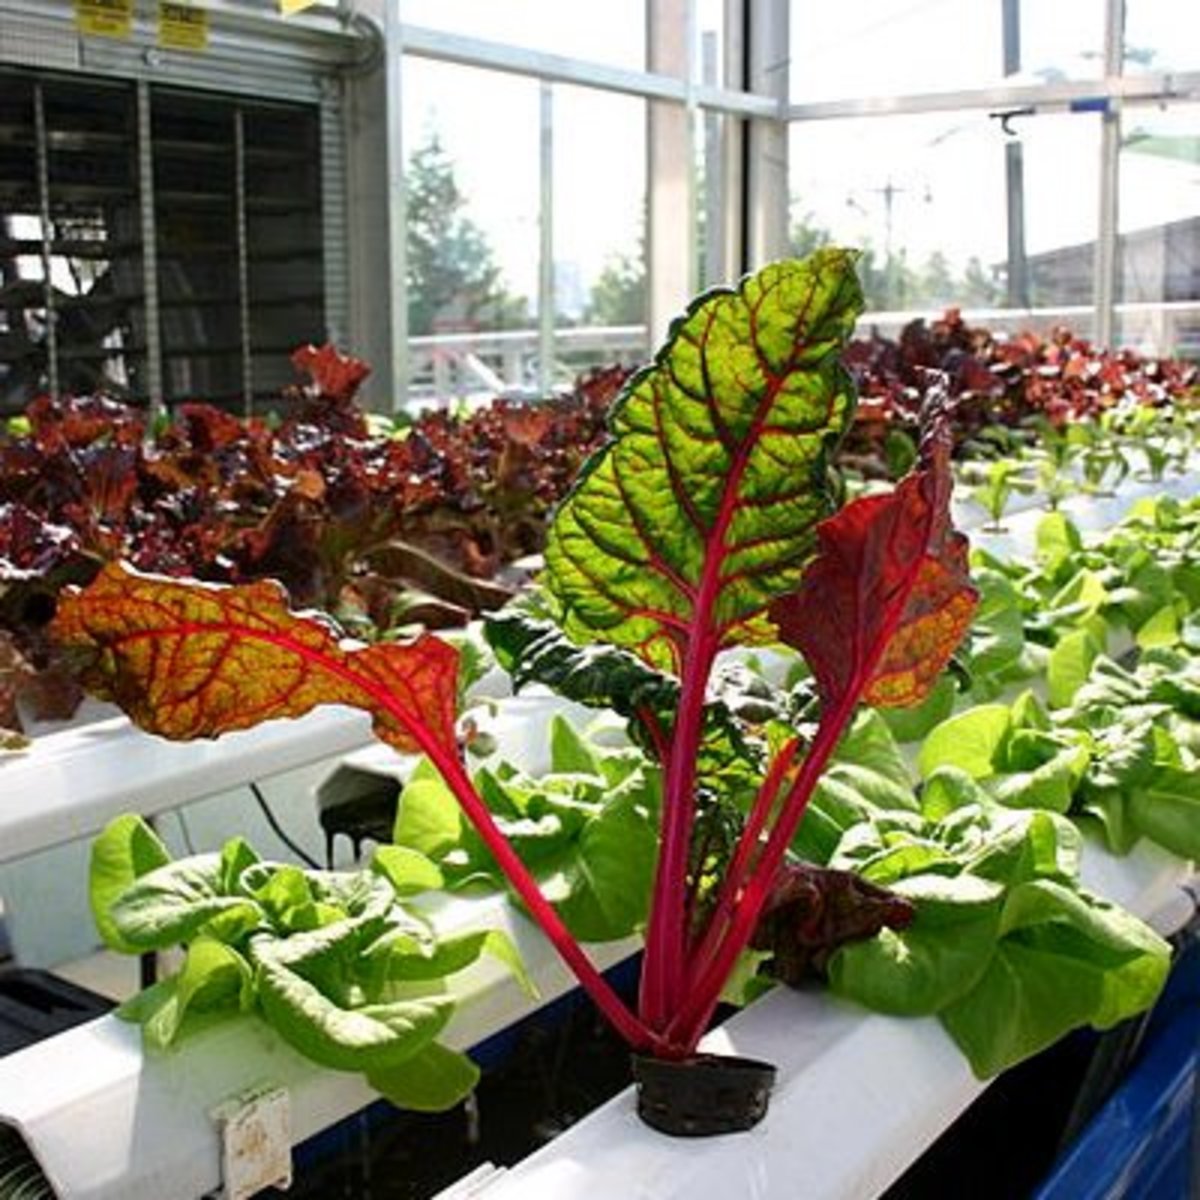 How to Build an Indoor Hydroponic Vegetable Garden | Dengarden